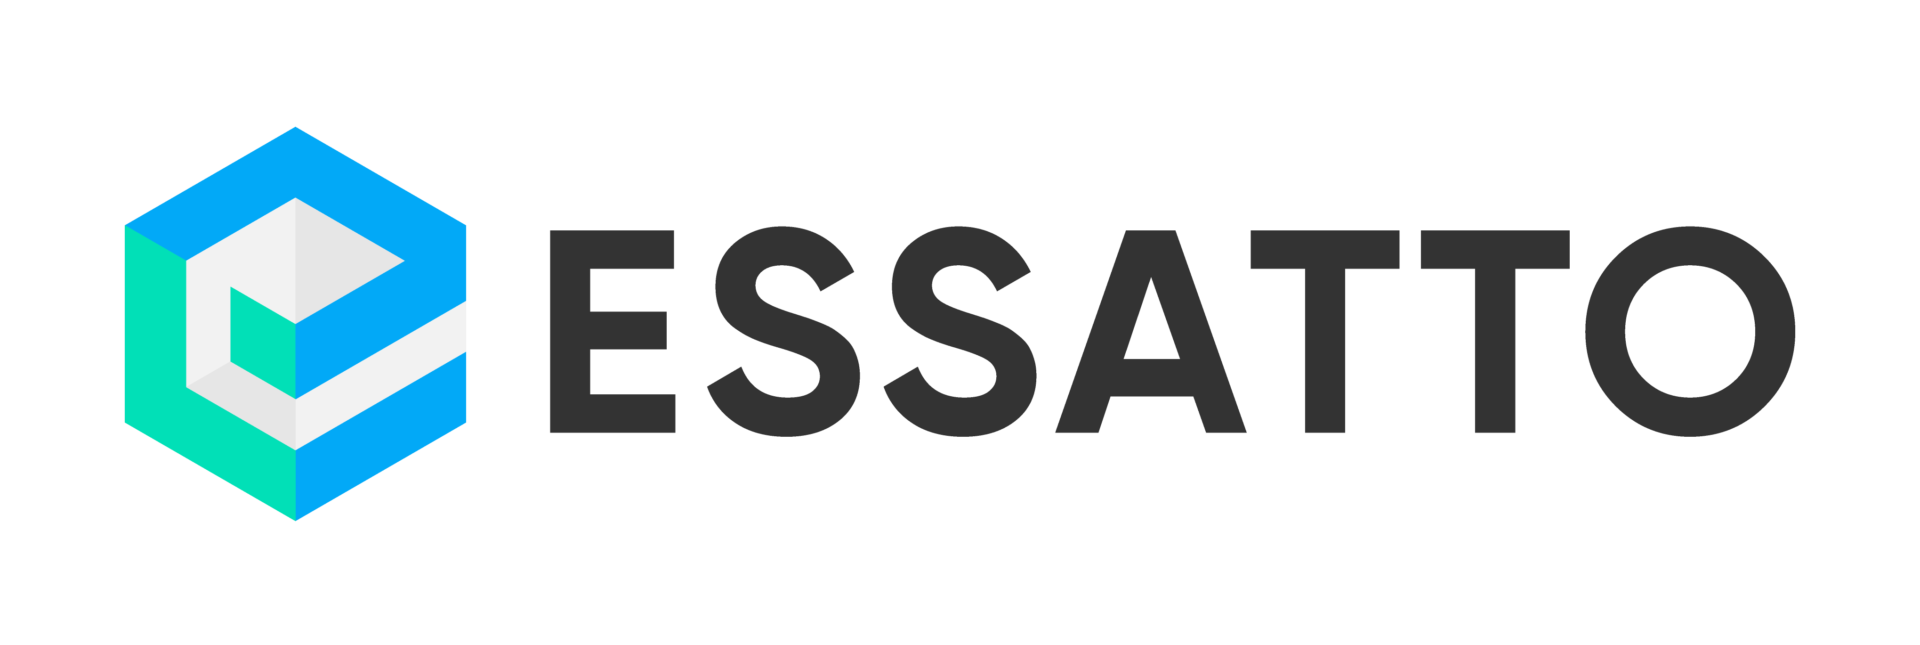 Essatto Logo